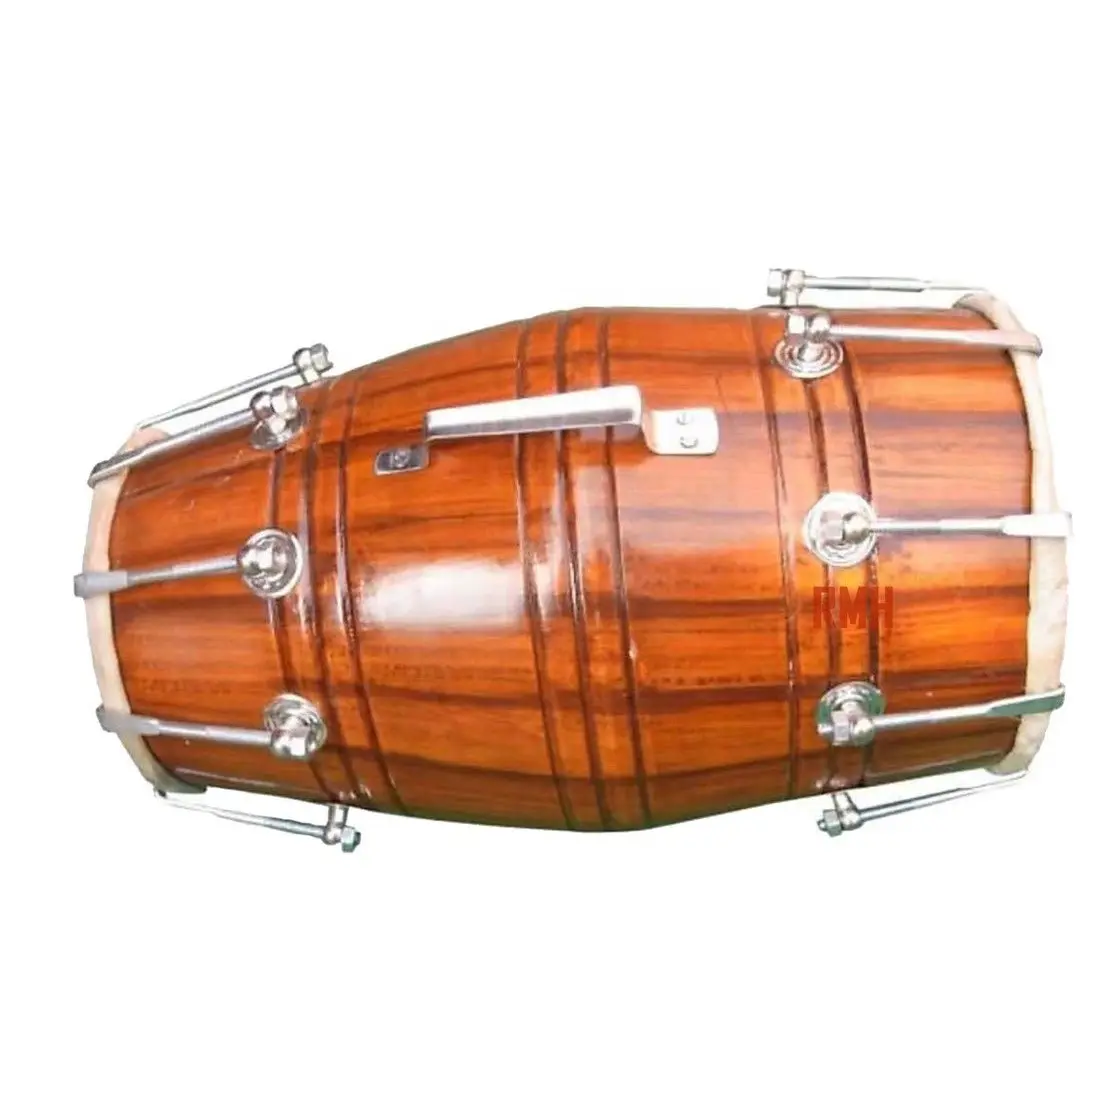 Dhol Bhangra Kirtan Musical Heritage tallado en madera Dholak indio hecho a mano de madera Dholki tambores musicales piel de oveja precio indio